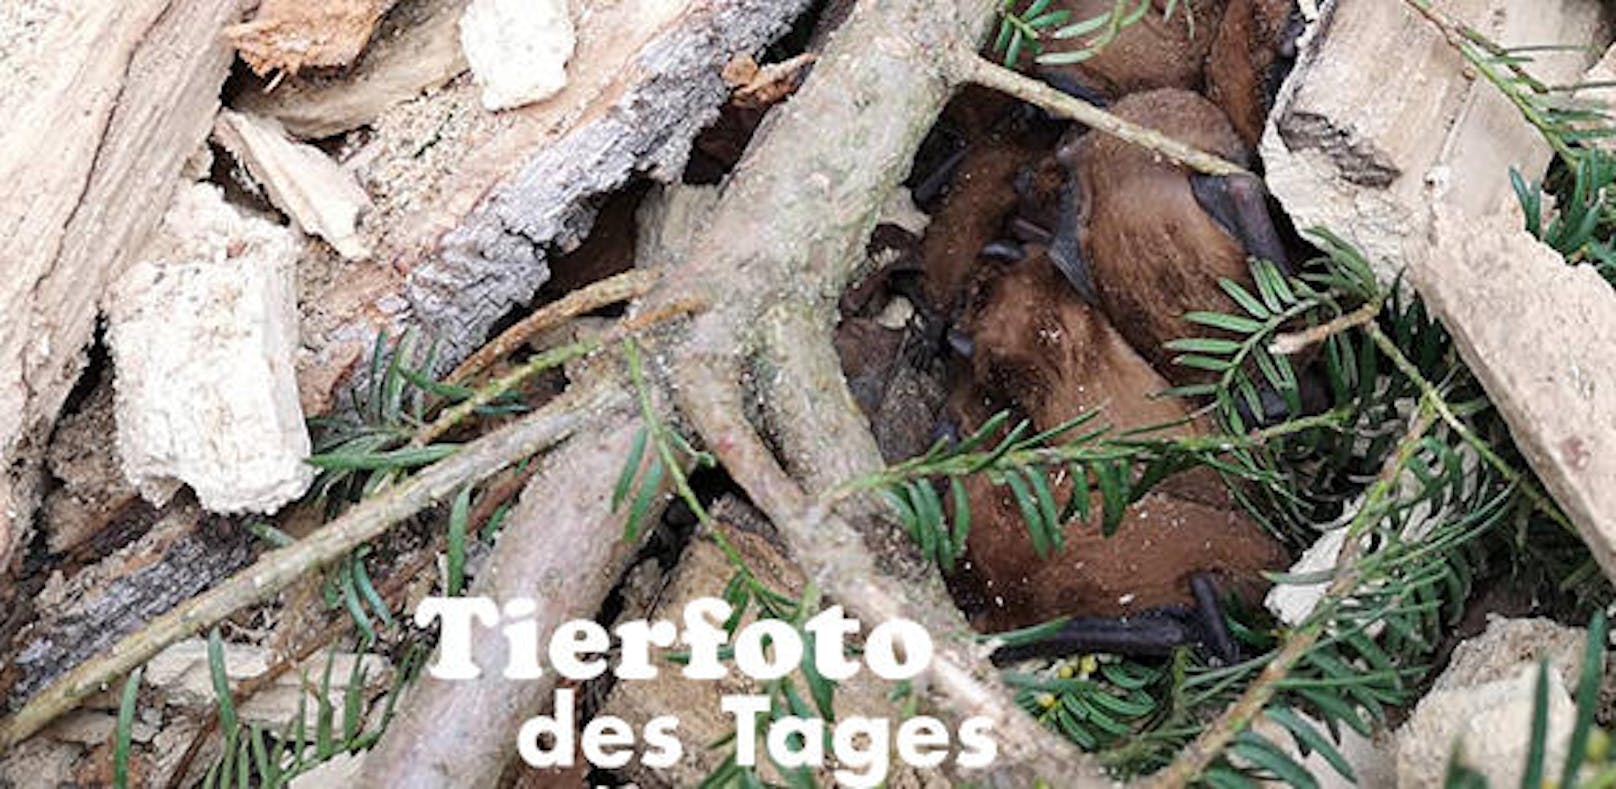 <b>Fledermäuse in Wien gerettet!</b> 14 Fledermäuse bei Baumschnitt-Arbeiten im Wiener Türkenschanzpark übersehen. Verein Wildtierhilfe Wien barg die Tiere. Zum Glück sind nur ein paar Fledermäuse leicht verletzt.